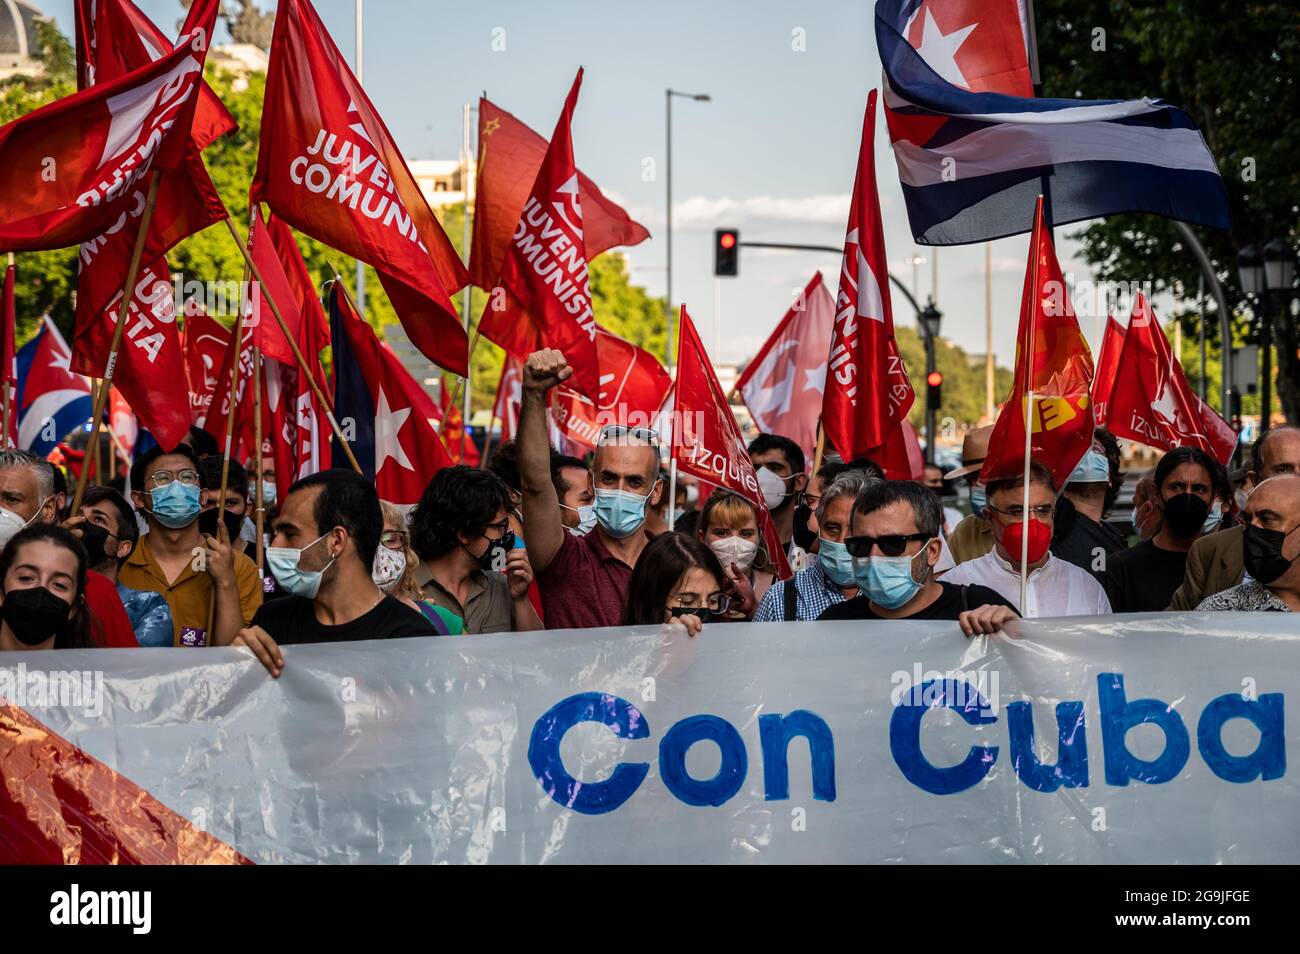 Madrid, Spanien. Juli 2021. Demonstranten mit Fahnen und Plakaten während einer Demonstration gegen das US-Wirtschaftsembargo gegen Kuba, zeitgleich mit dem 26. Juli, dem Tag, an dem die kubanische Revolution 1953, vor 68 Jahren, begann. Quelle: Marcos del Mazo/Alamy Live News Stockfoto